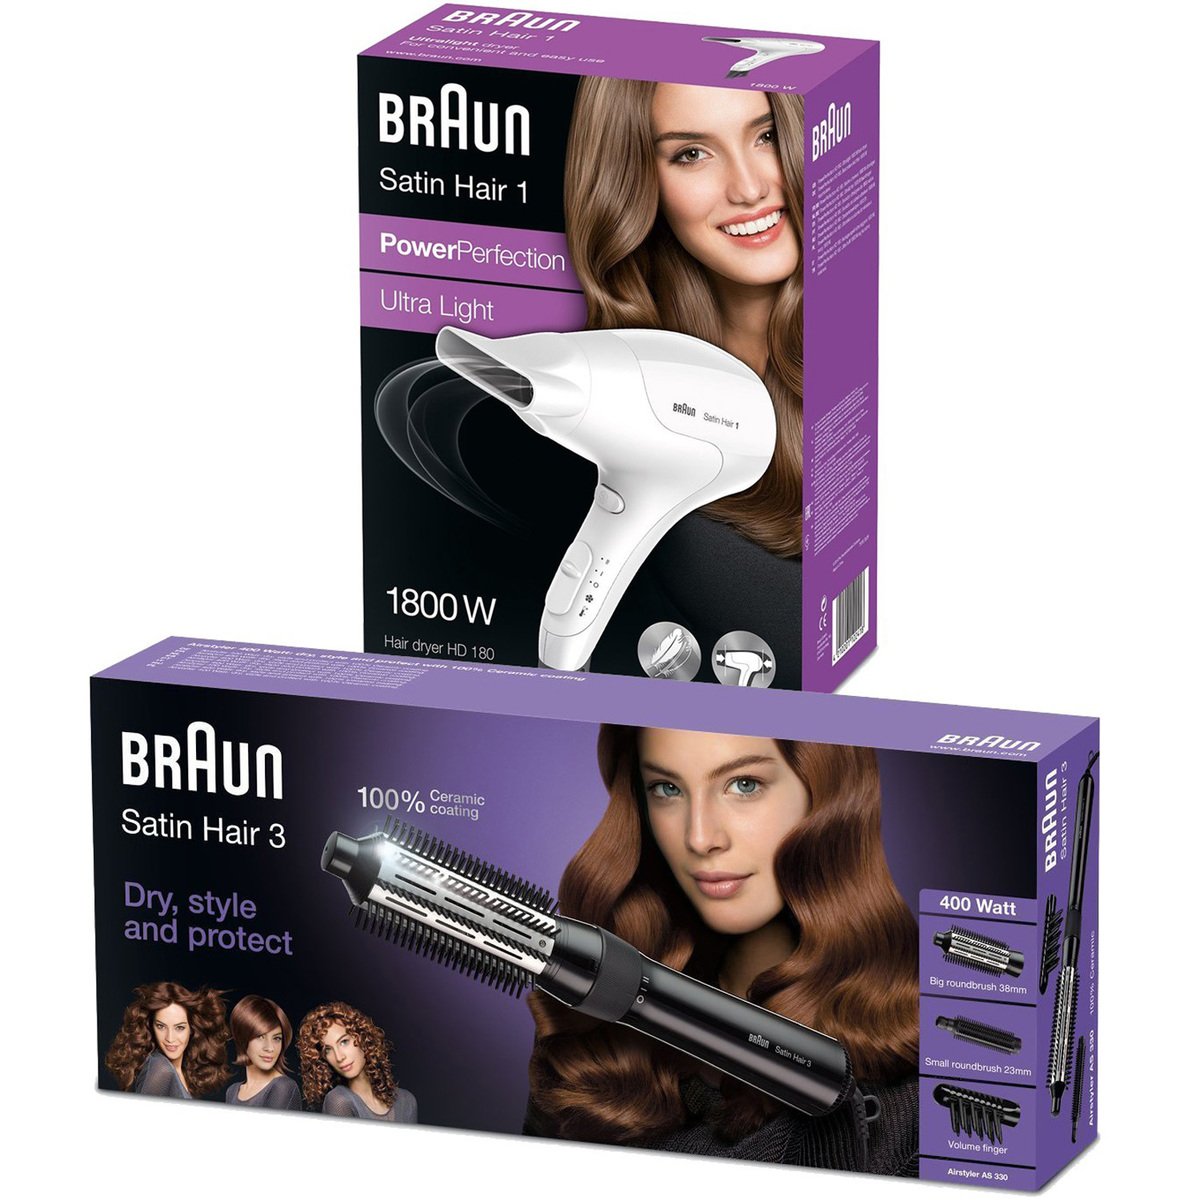 over het algemeen Penetratie Atletisch Braun Satin Hair 3 Airstyler AS 330 + Braun Satin Hair 1 Hair Dryer HD 180  Online at Best Price | Hair Stylers | Lulu UAE